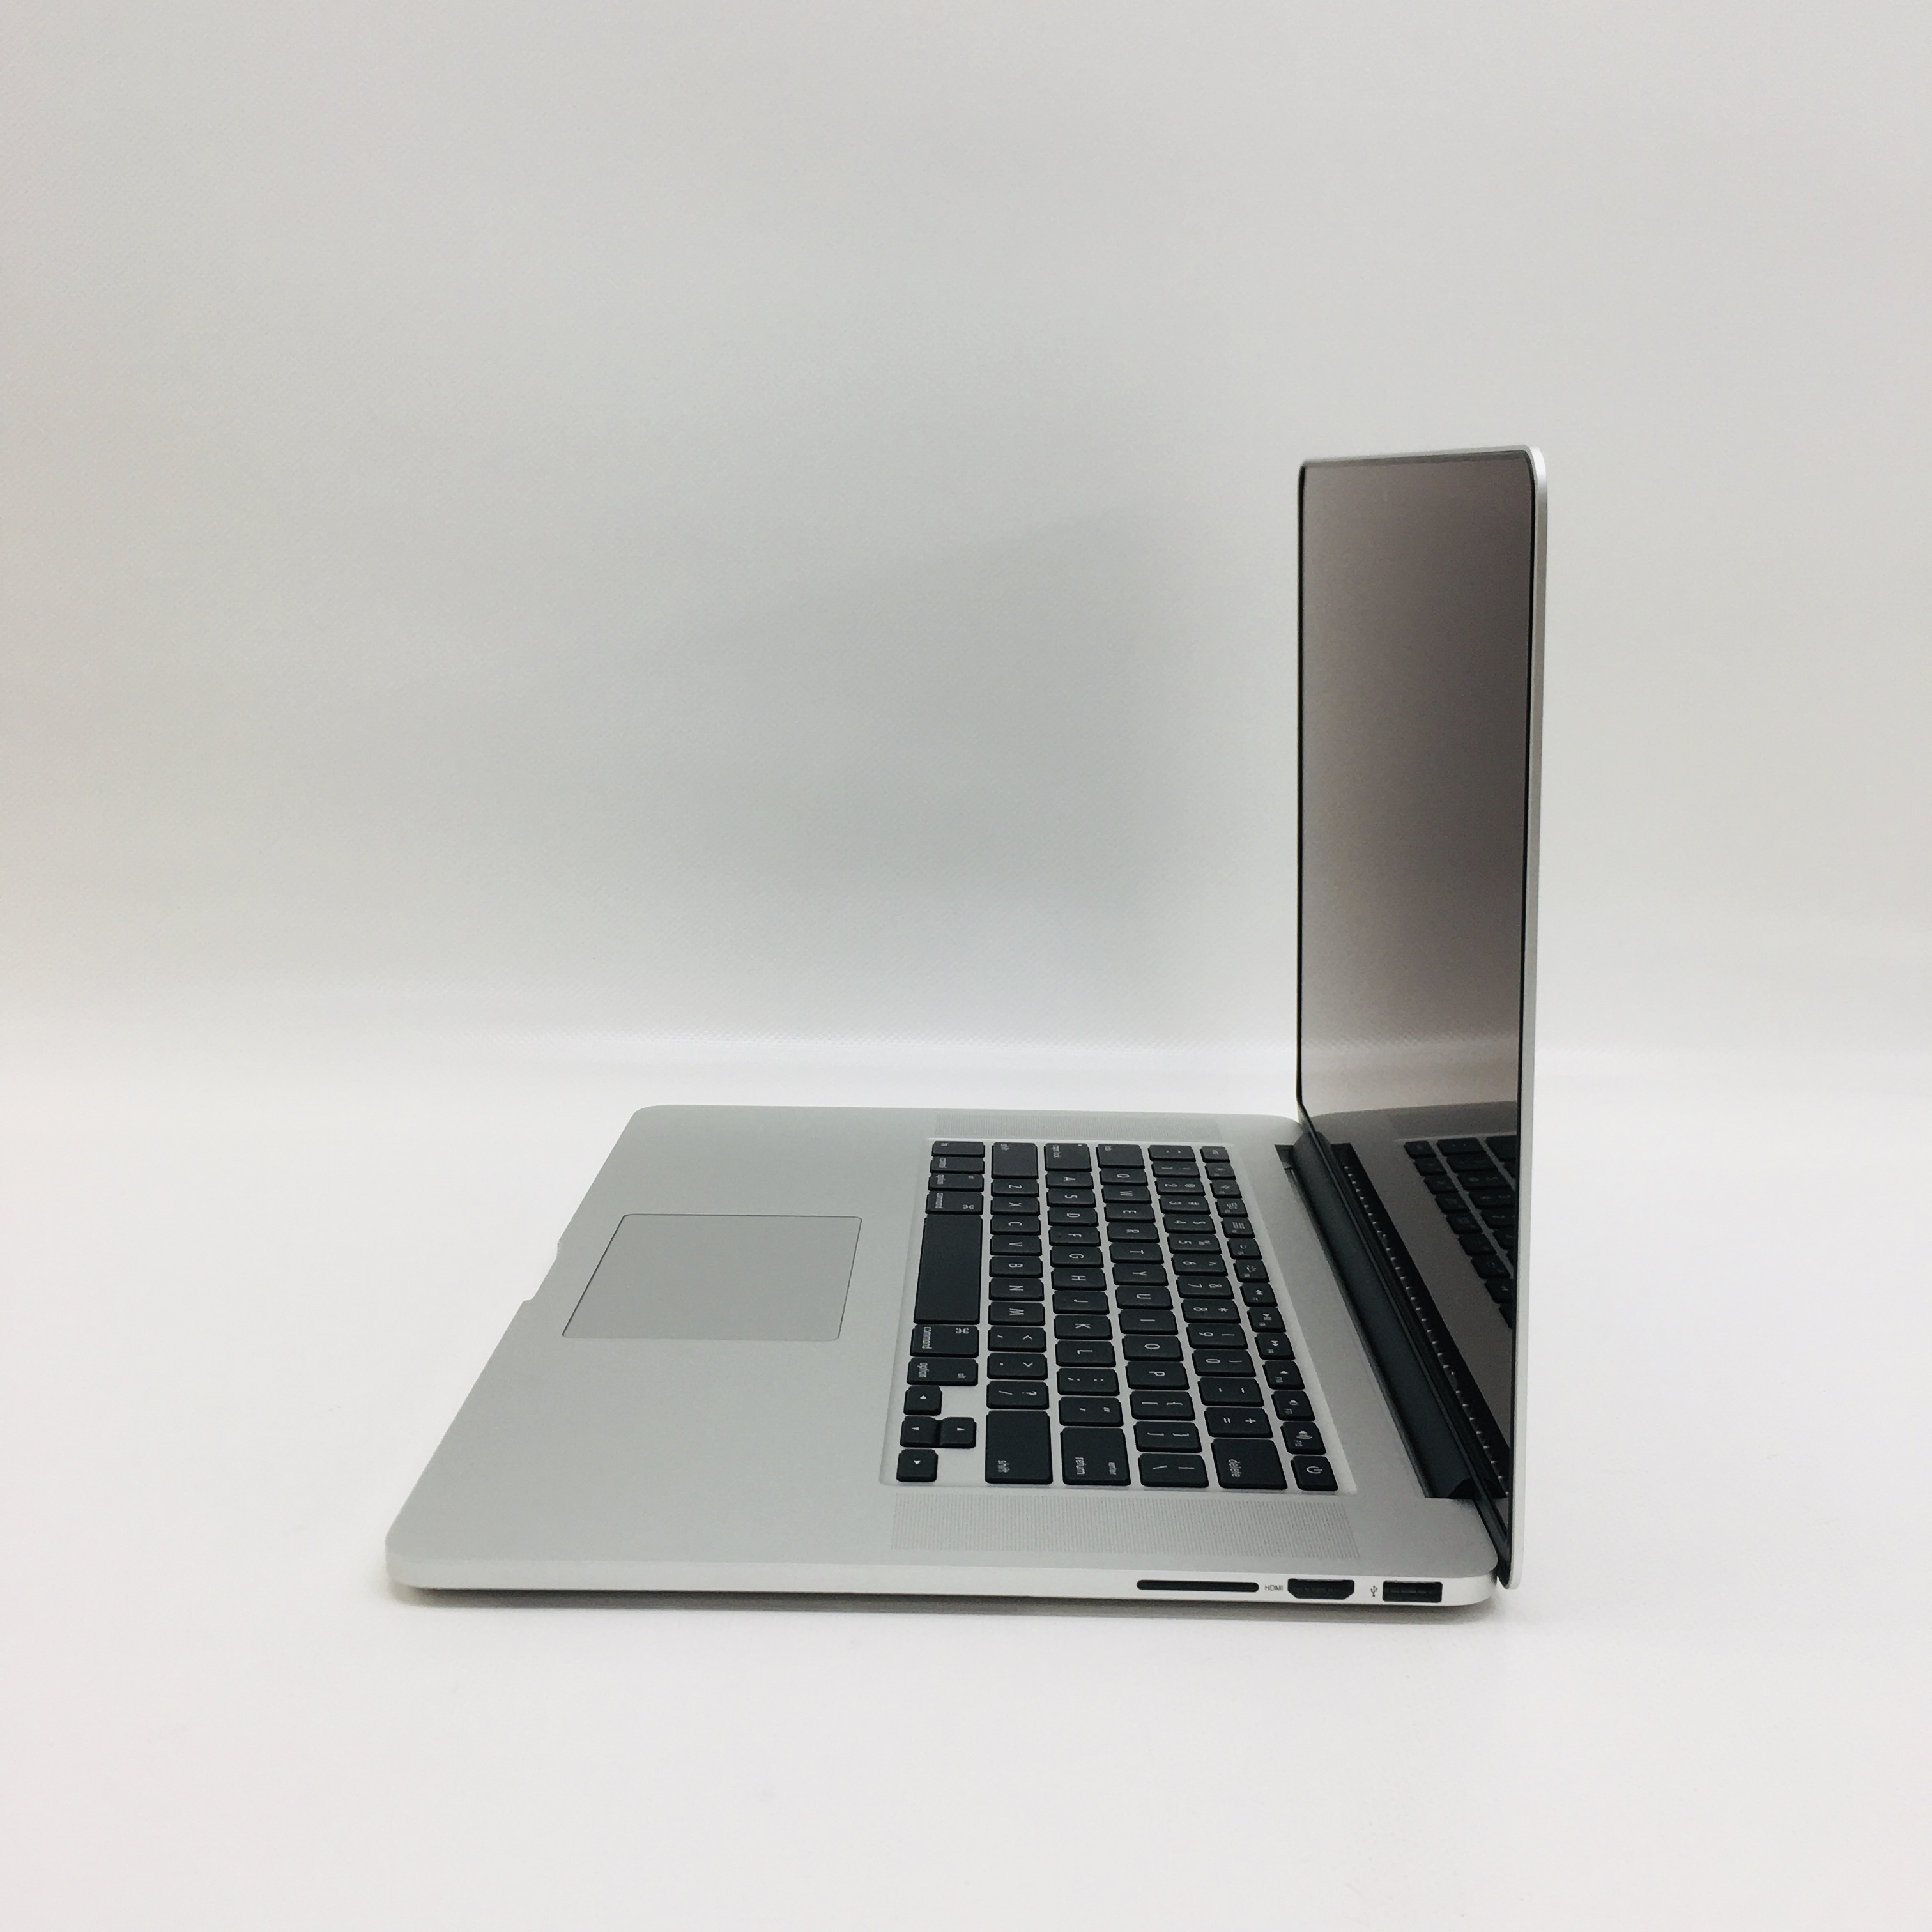 MacBook Pro Retina 15" Mid 2015 (Intel Quad-Core i7 2.5 GHz 16 GB RAM 1 TB SSD), Intel Quad-Core i7 2.5 GHz, 16 GB RAM, 1 TB SSD, image 3